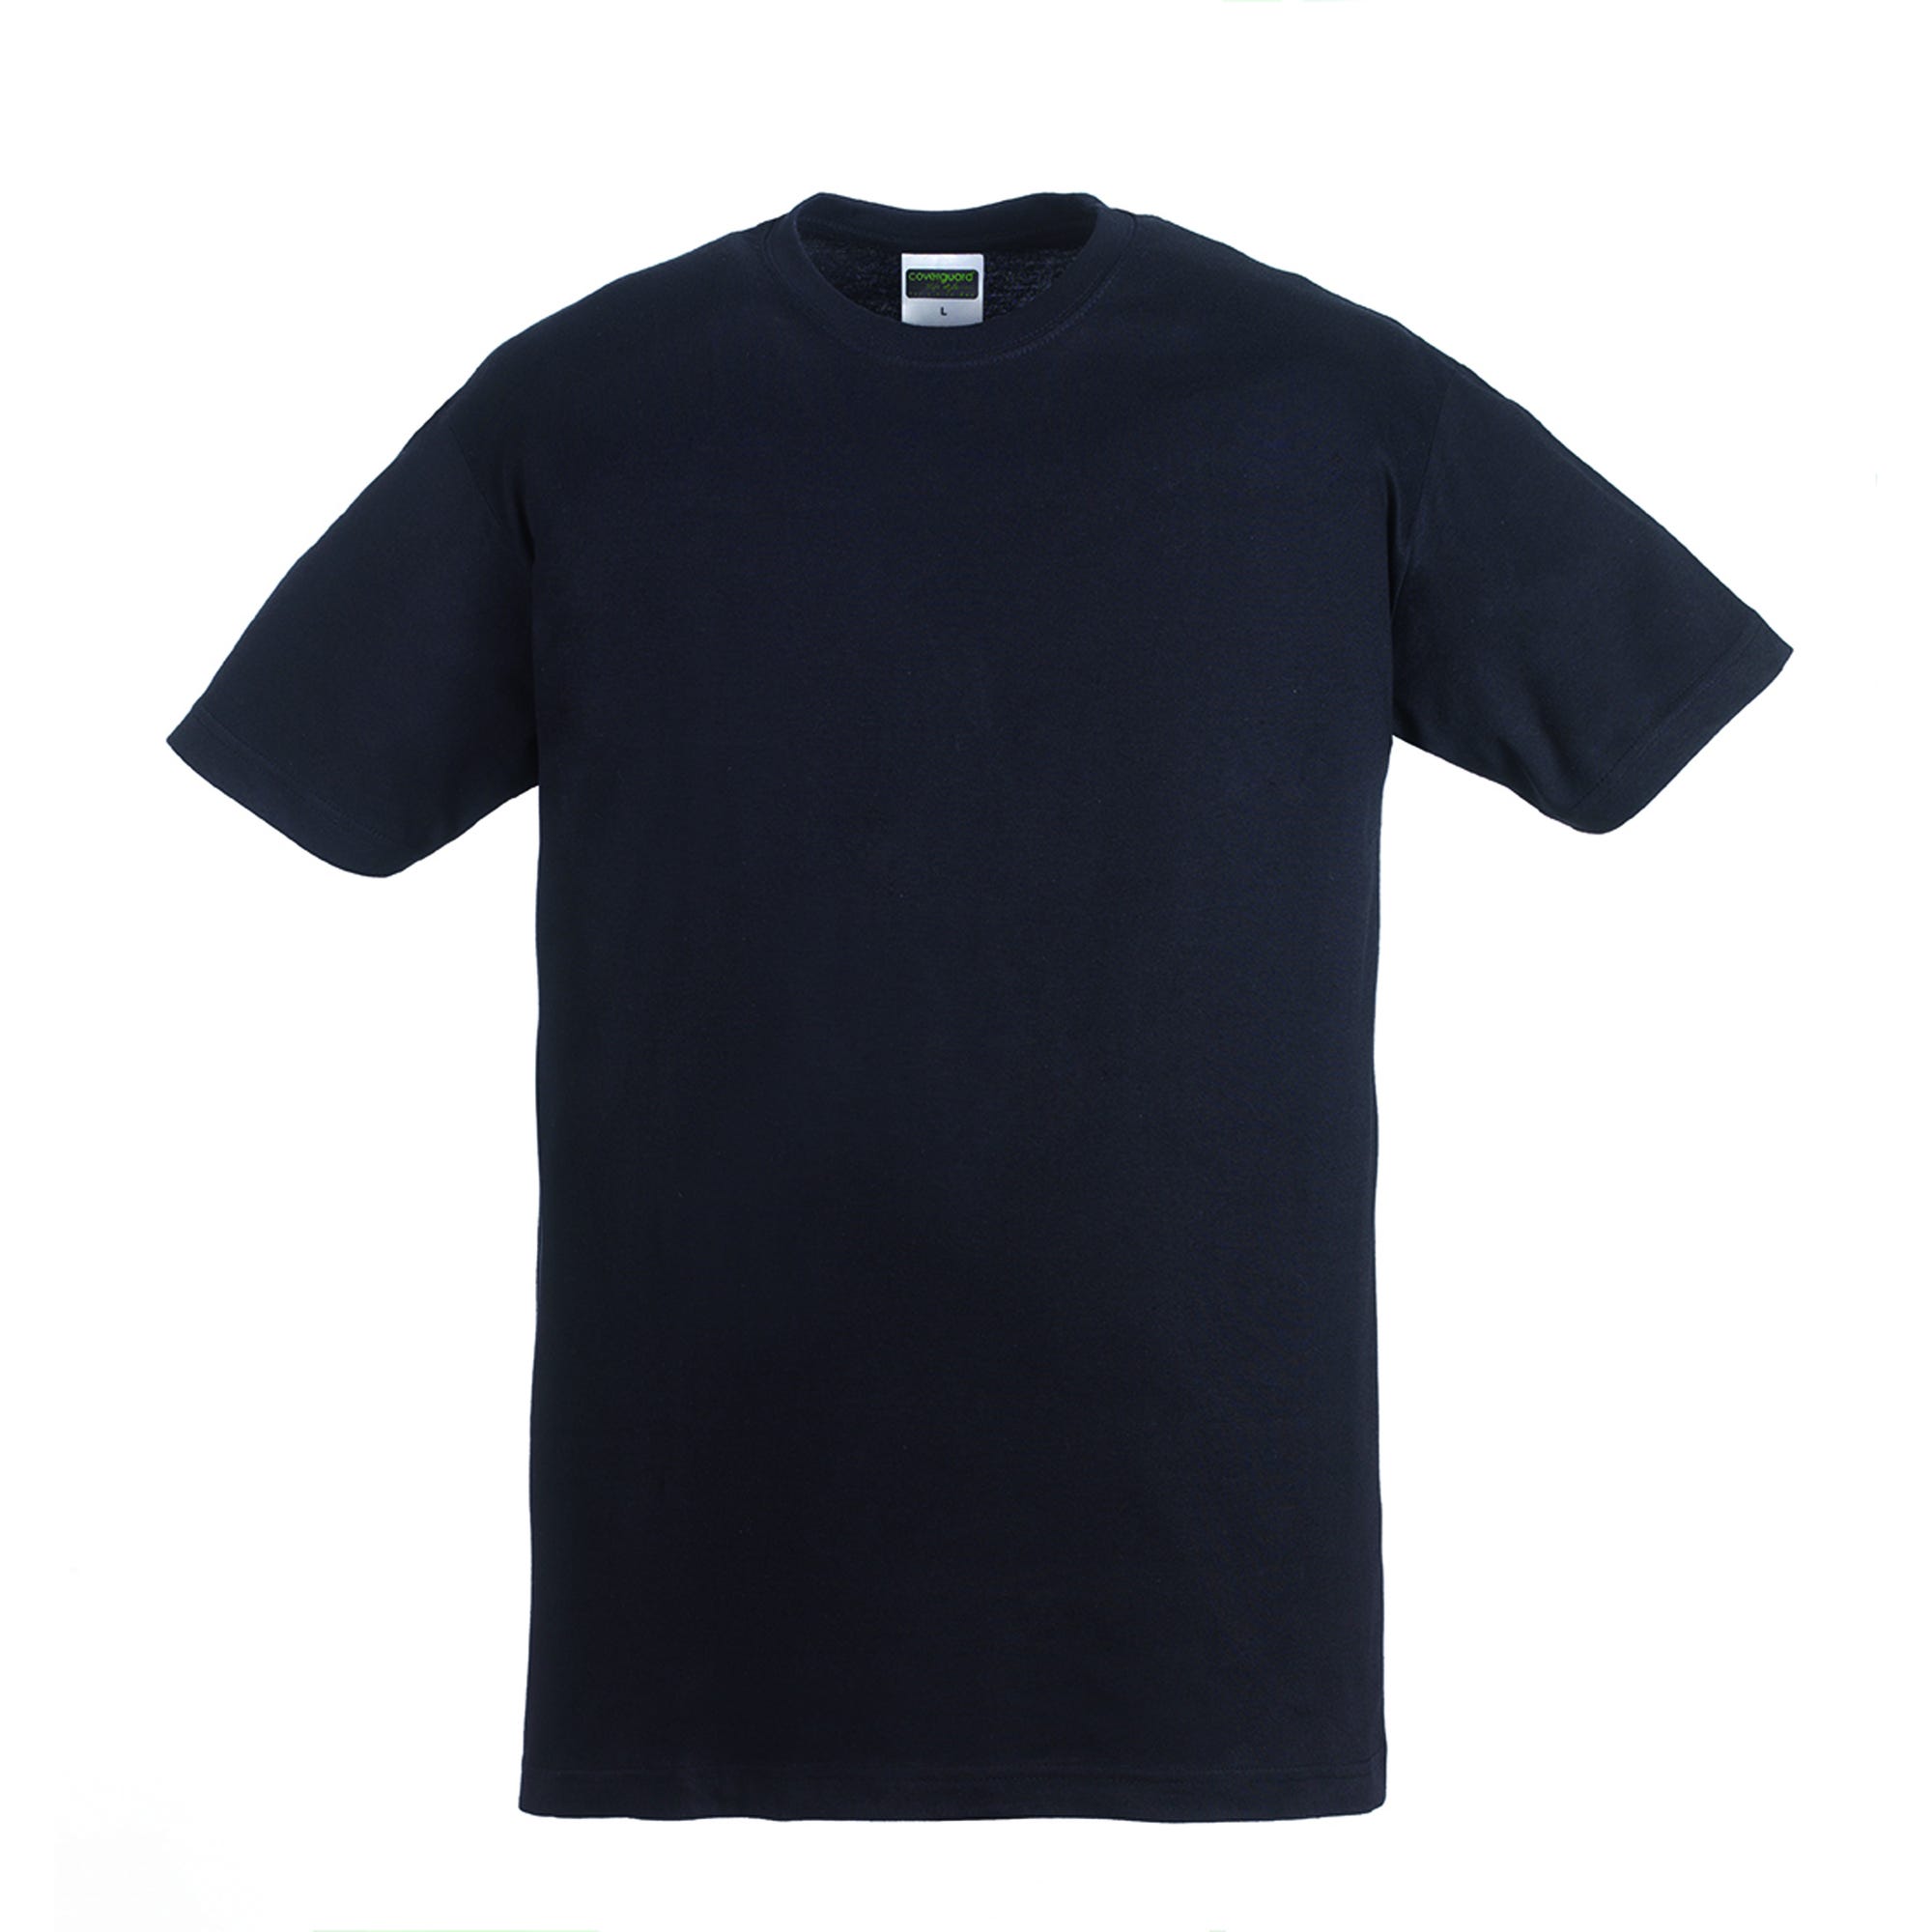 HIKE T-shirt MC noir, 100% coton, 190g/m² - COVERGUARD - Taille S 1